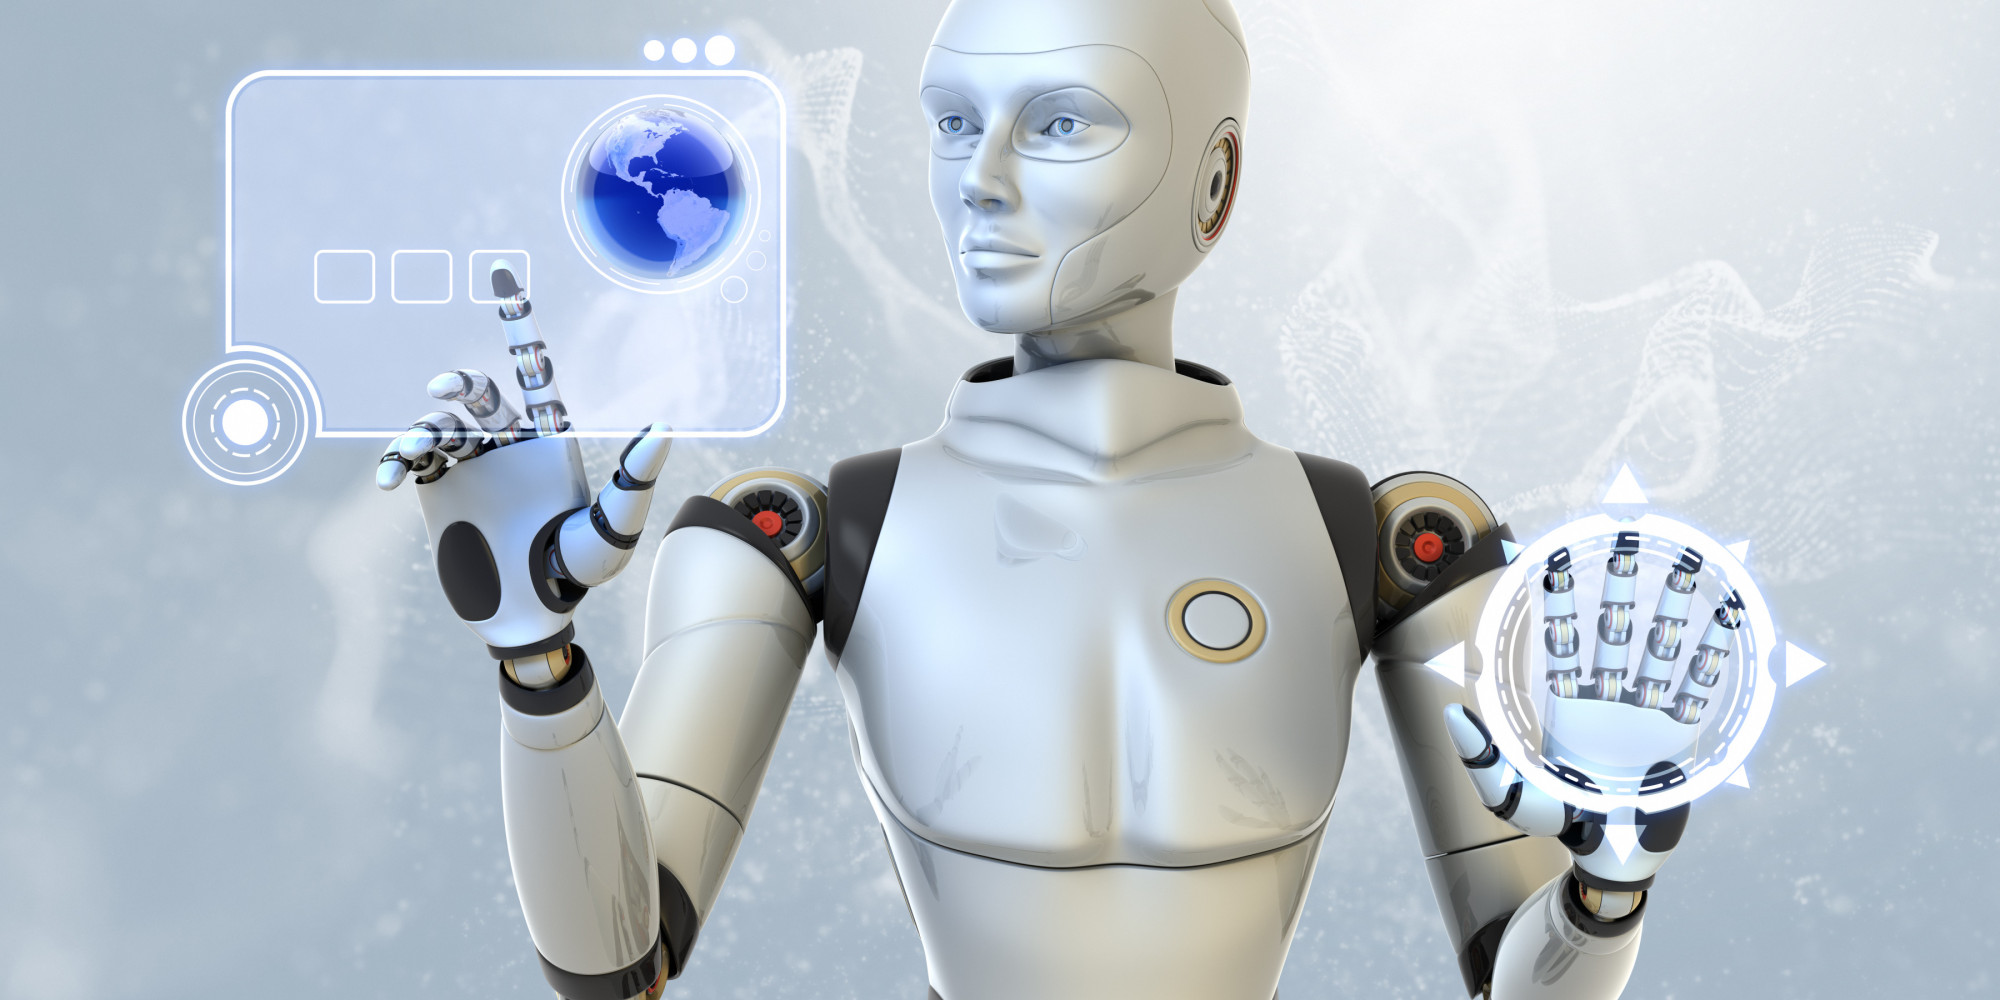 Gartner afirma que quase todos os programas terão Inteligência Artificial até 2020